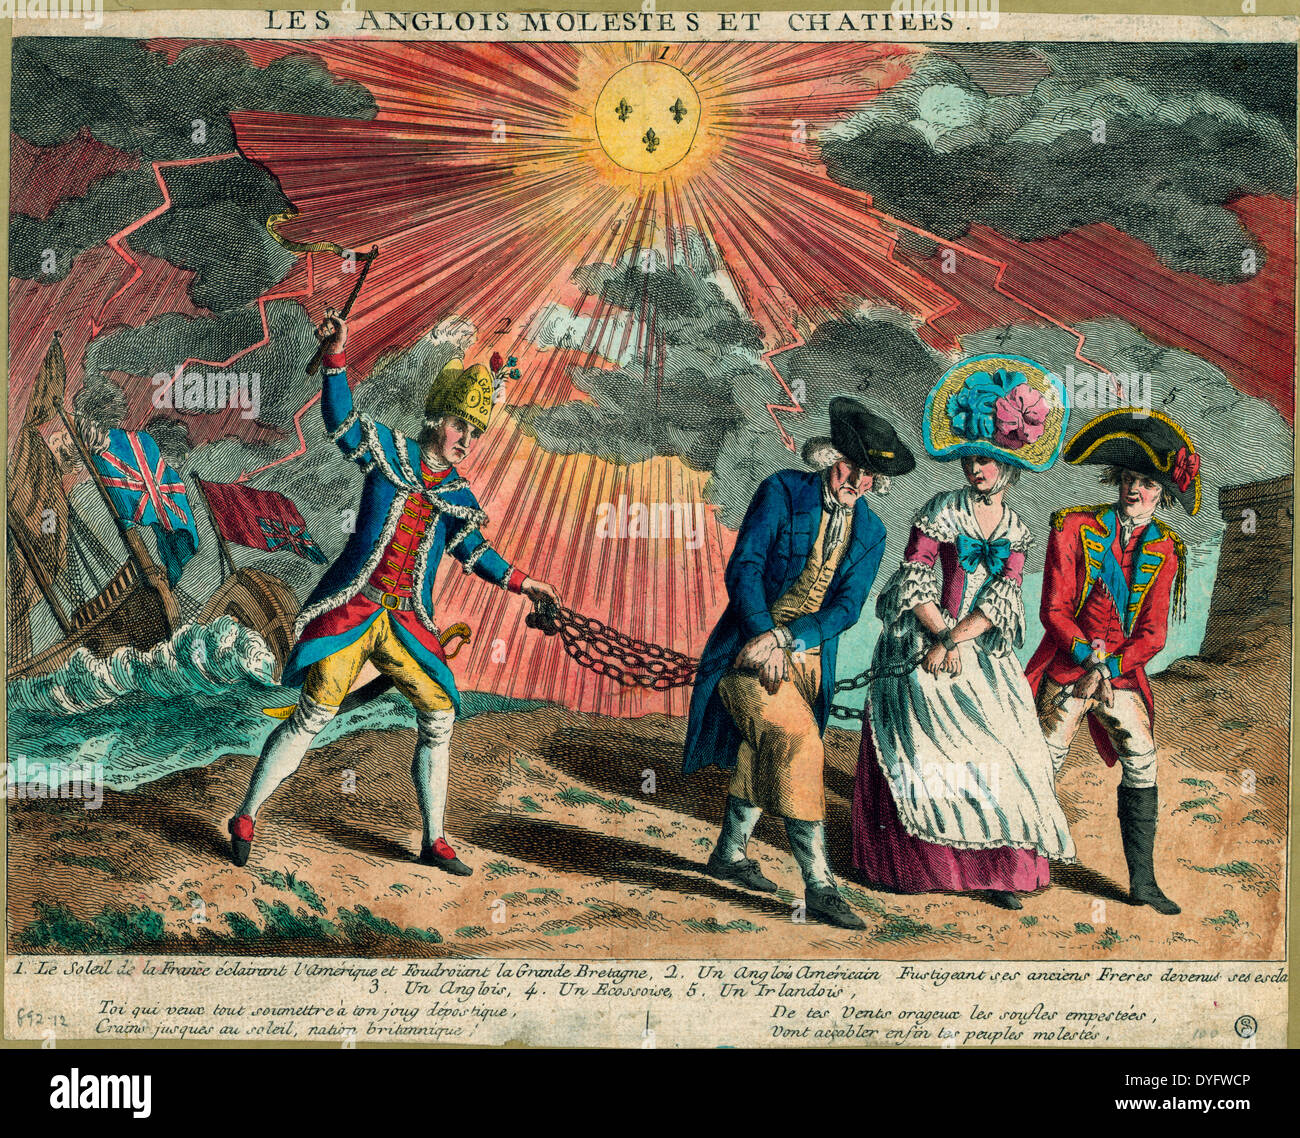 Les Anglois molestes et chatiees - l'anglais et français molesté puni - caricature politique, 1779 Banque D'Images